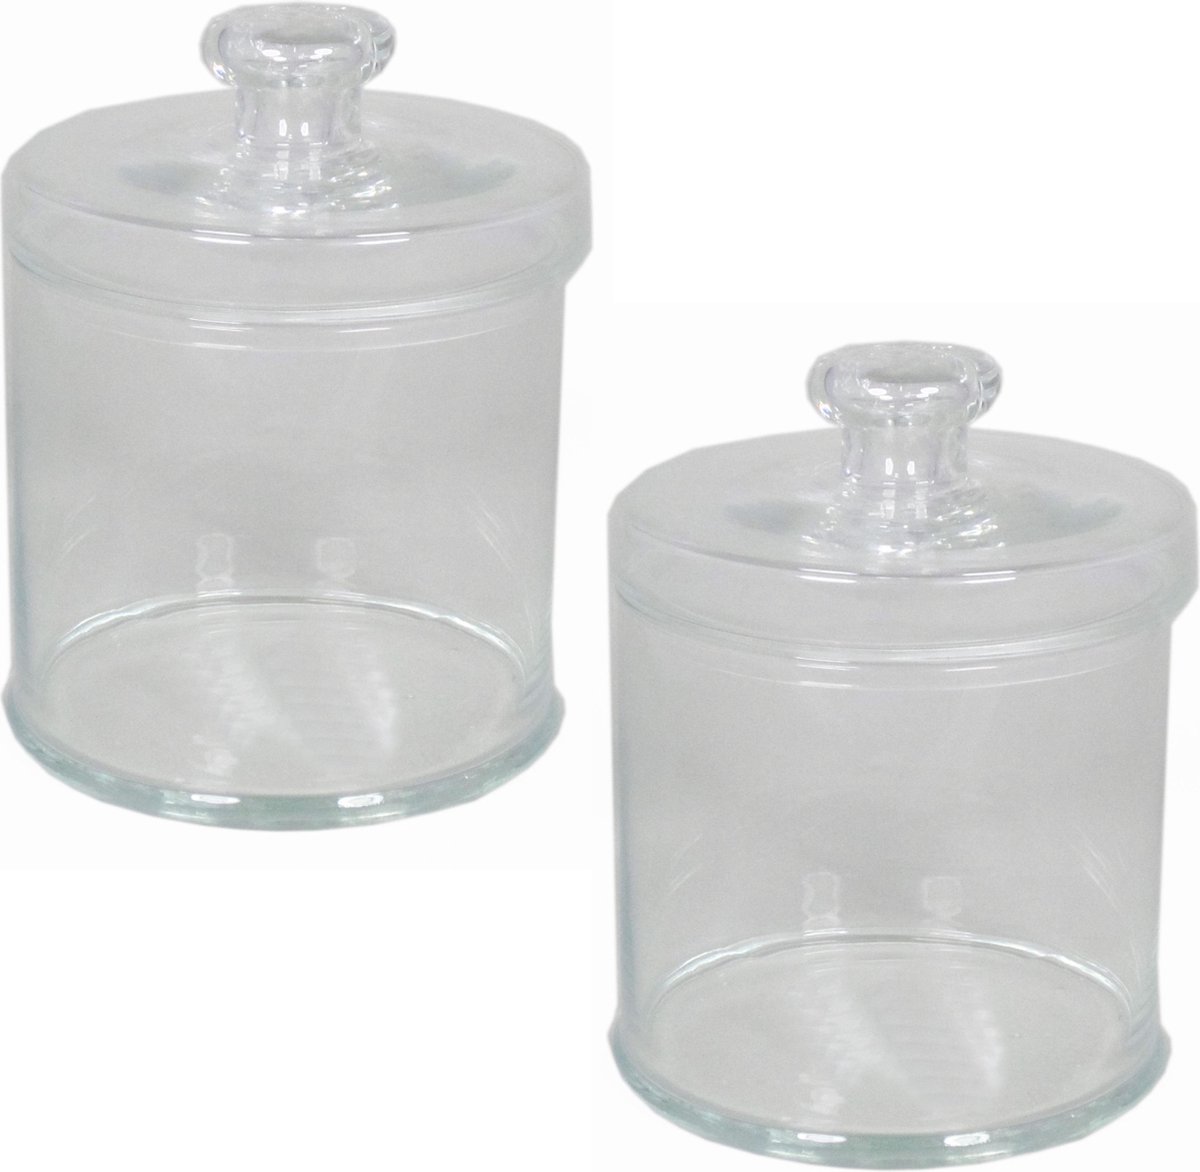 3x Glazen voorraadpotten/bewaarpotten 4000 ml met deksel 16 x 21 cm - Koekjespotten/snoeppotten van glas